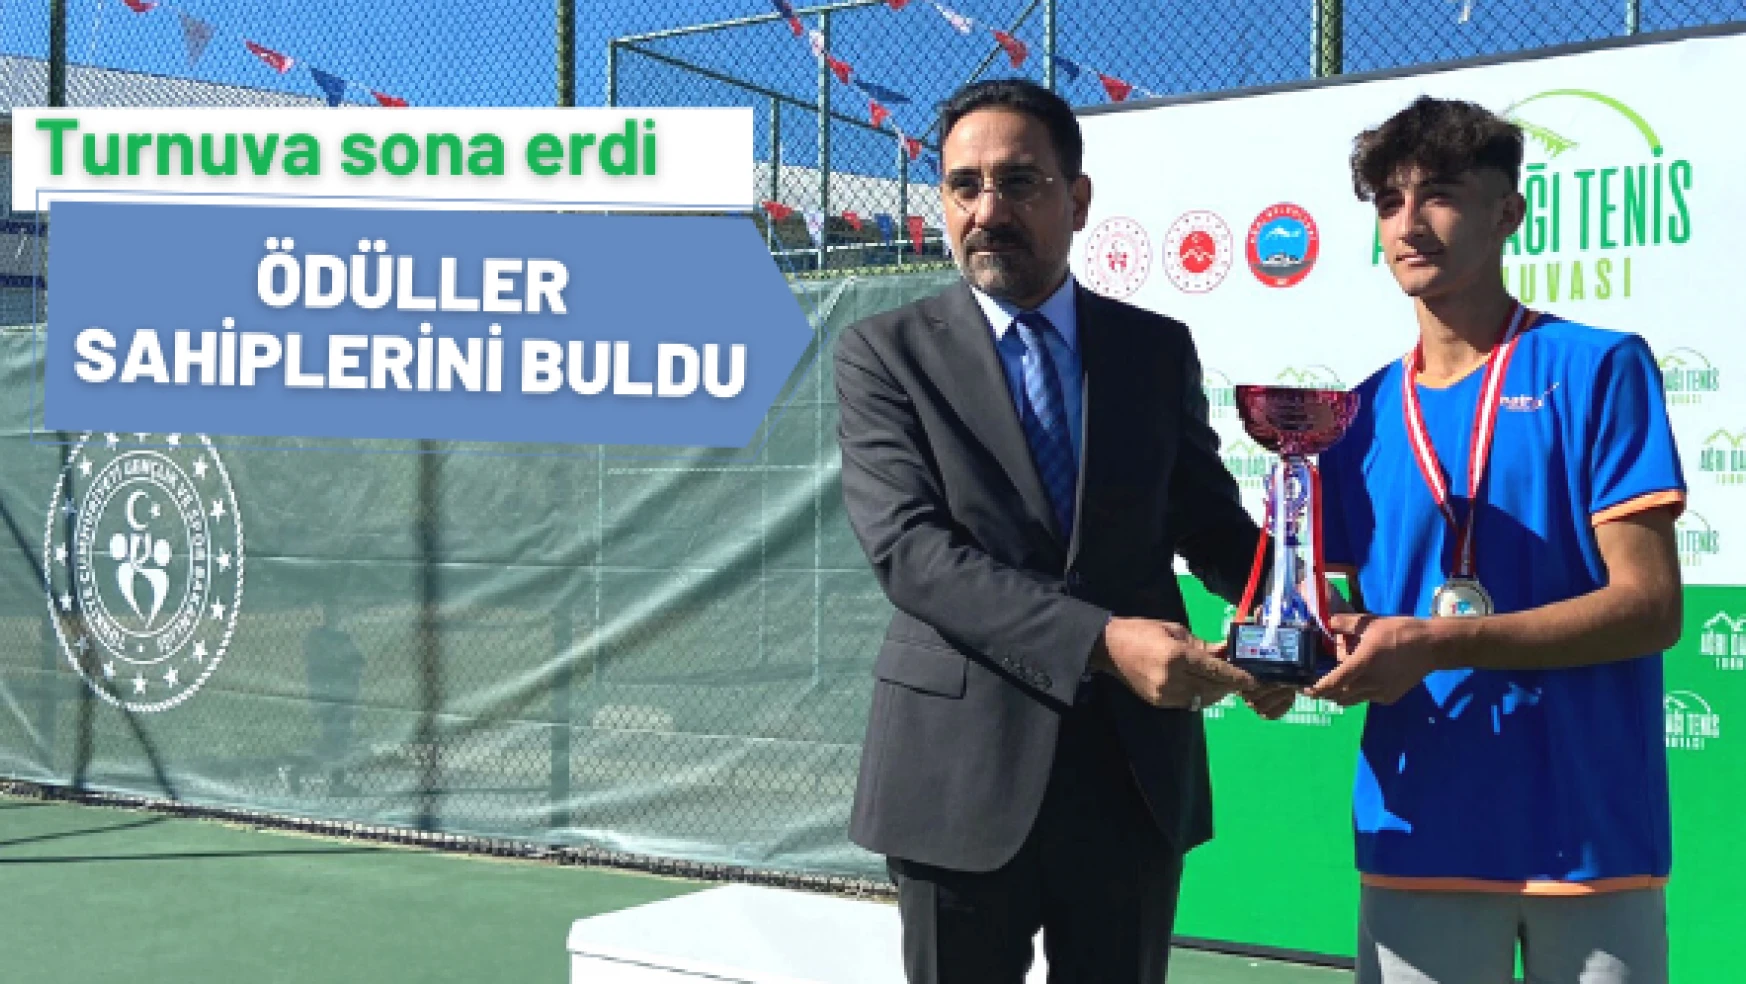 Ağrı'da 'Ulusal Tenis Turnuvası' sona erdi